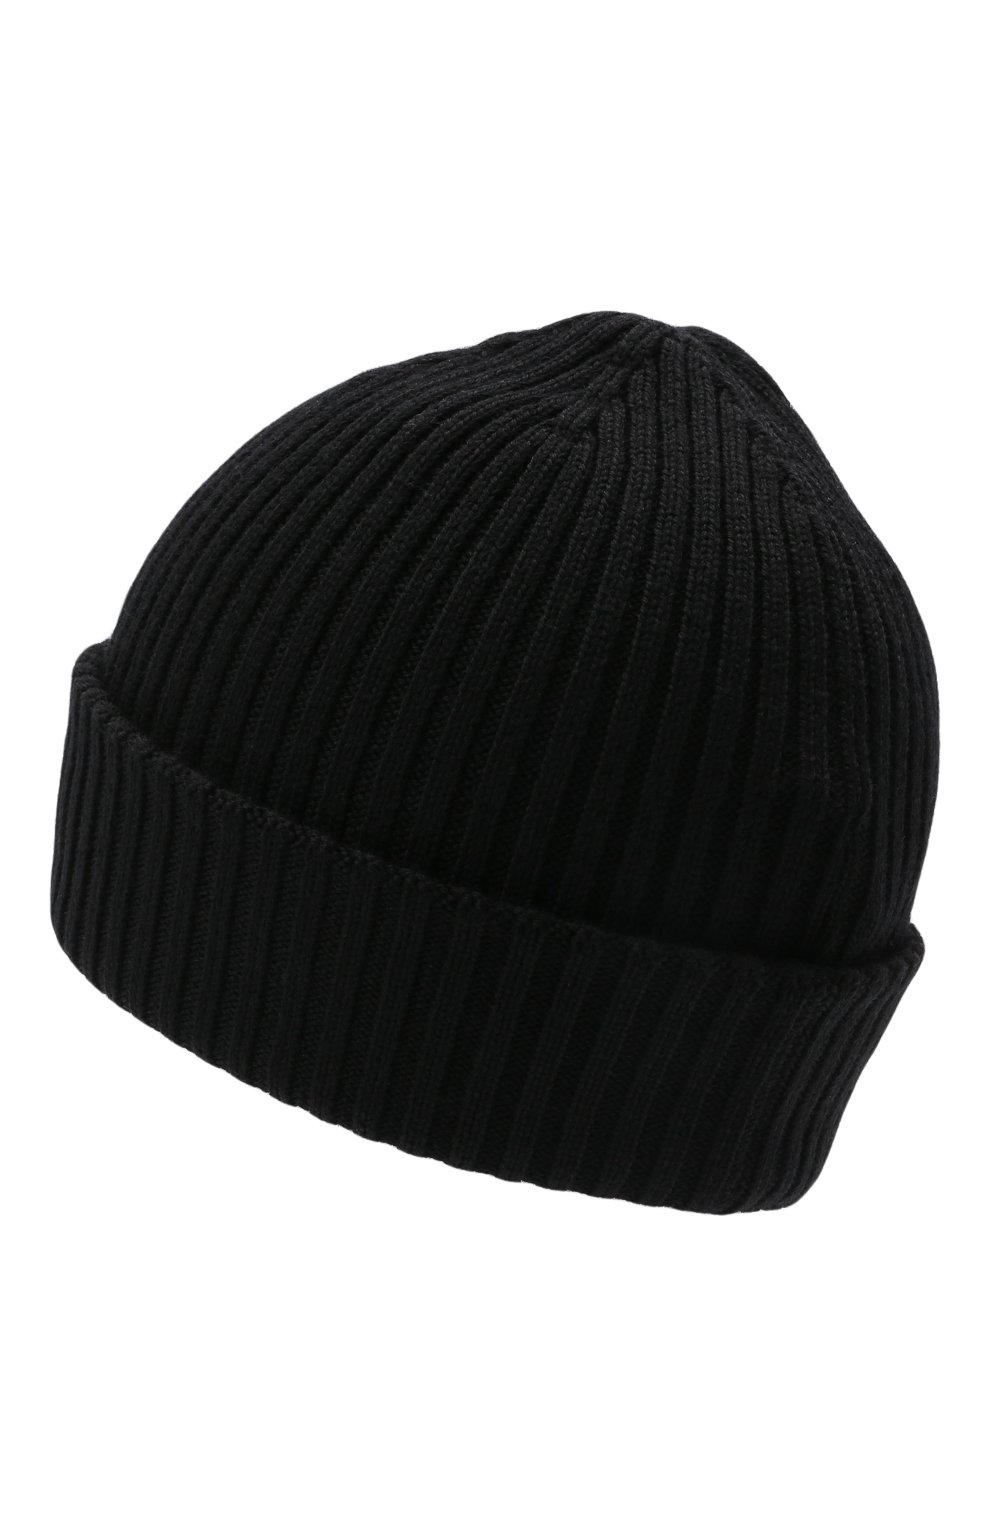 Мужская шерстяная шапка MONCLER черног о цвета, арт. G2-091-3B000-29-A9576 | Фото 2 (Материал: Текстиль, Шерсть; Кросс-КТ: Трикотаж)